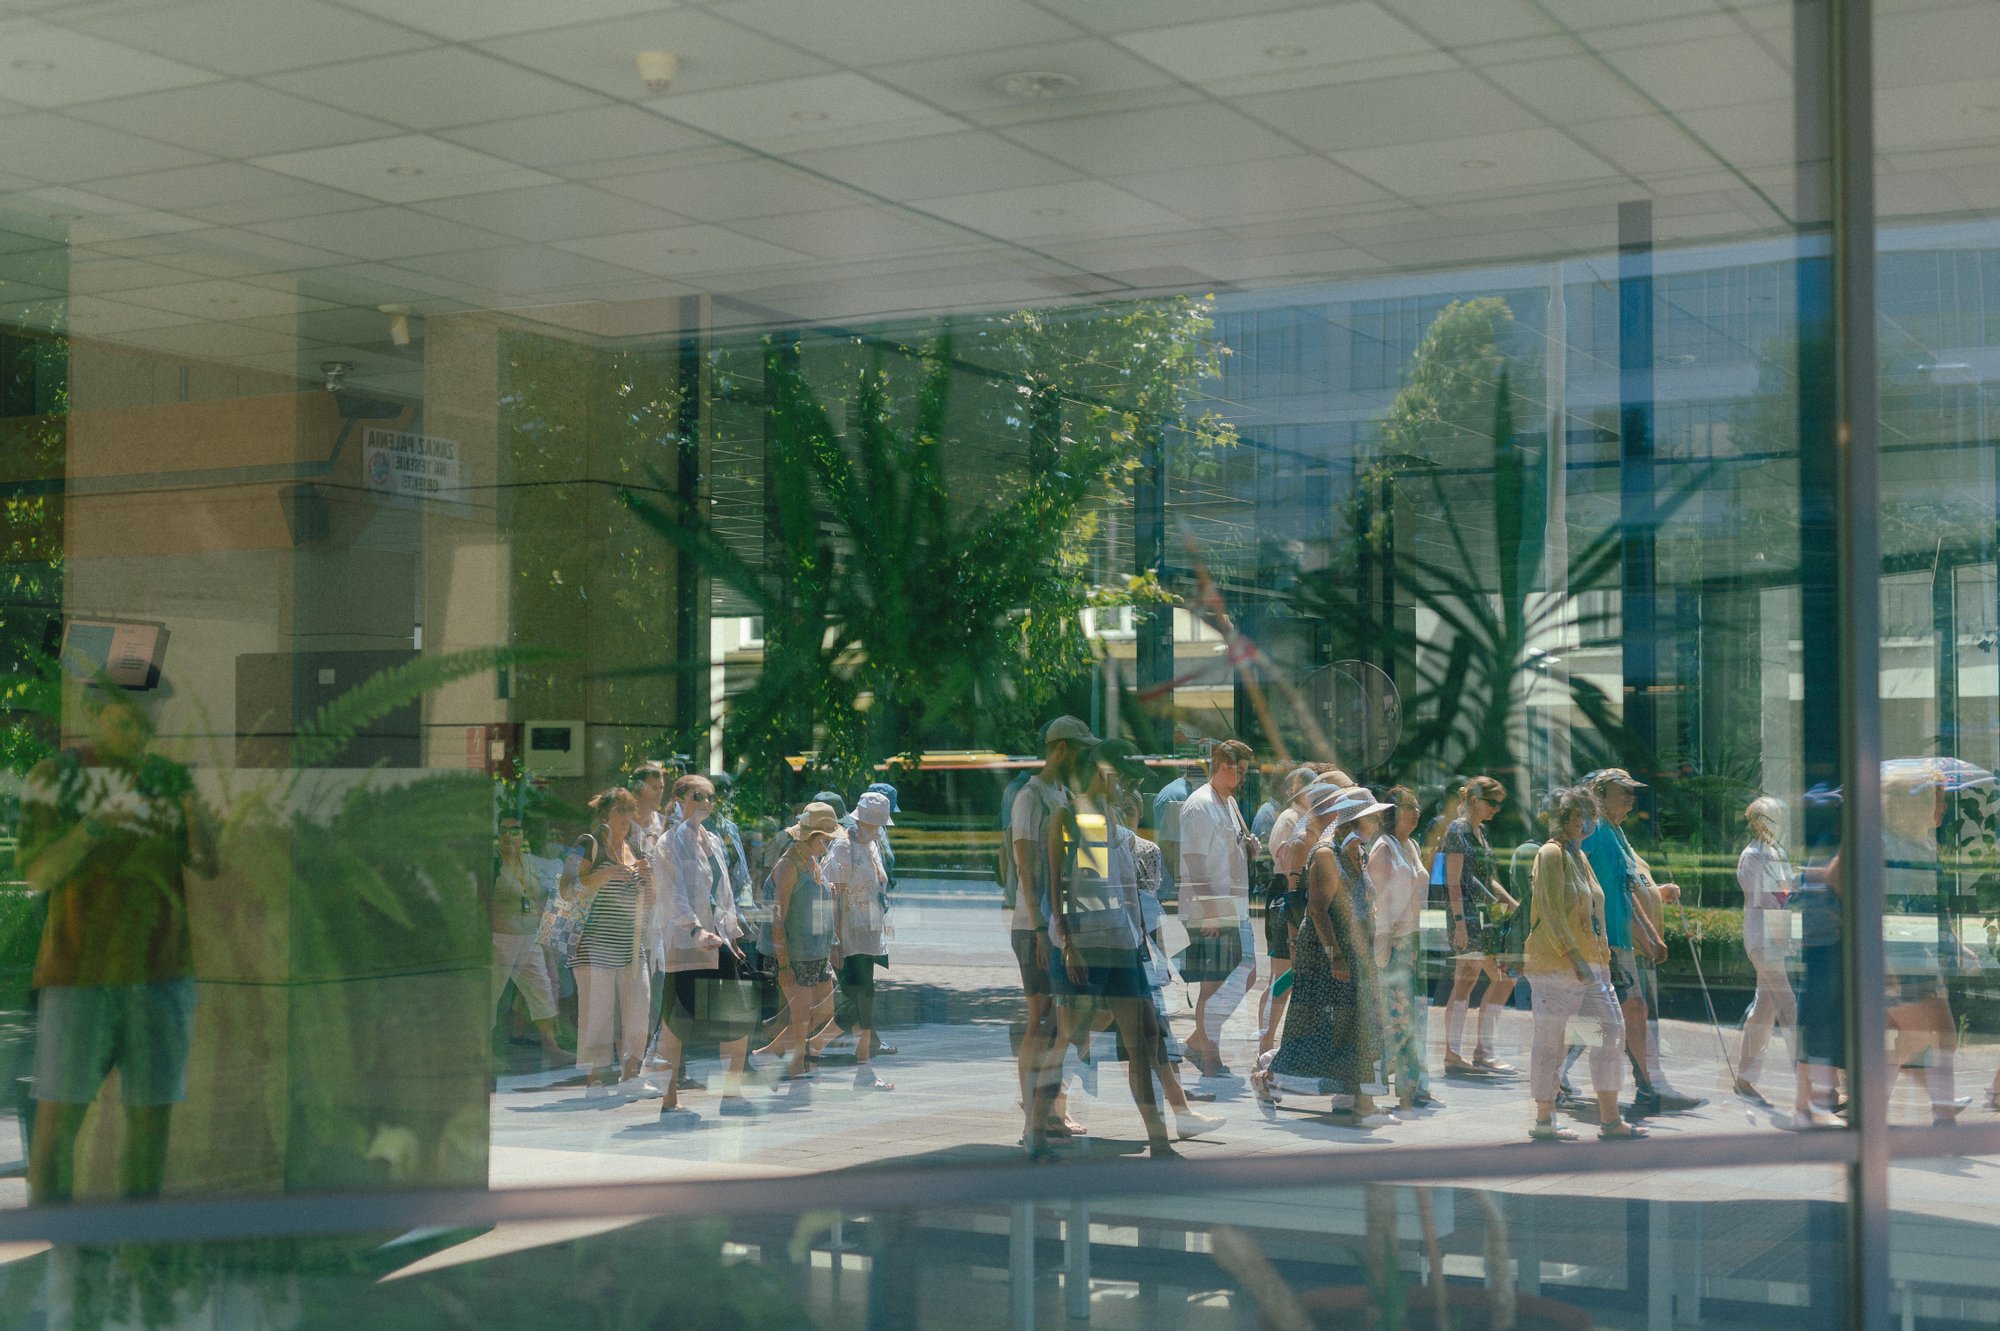 Kolorowa, pozioma fotografia. W szklanej witrynie niskiego budynku odbijają się, przechodzące obok osoby, biorące udział w spacerze po osiedlu.